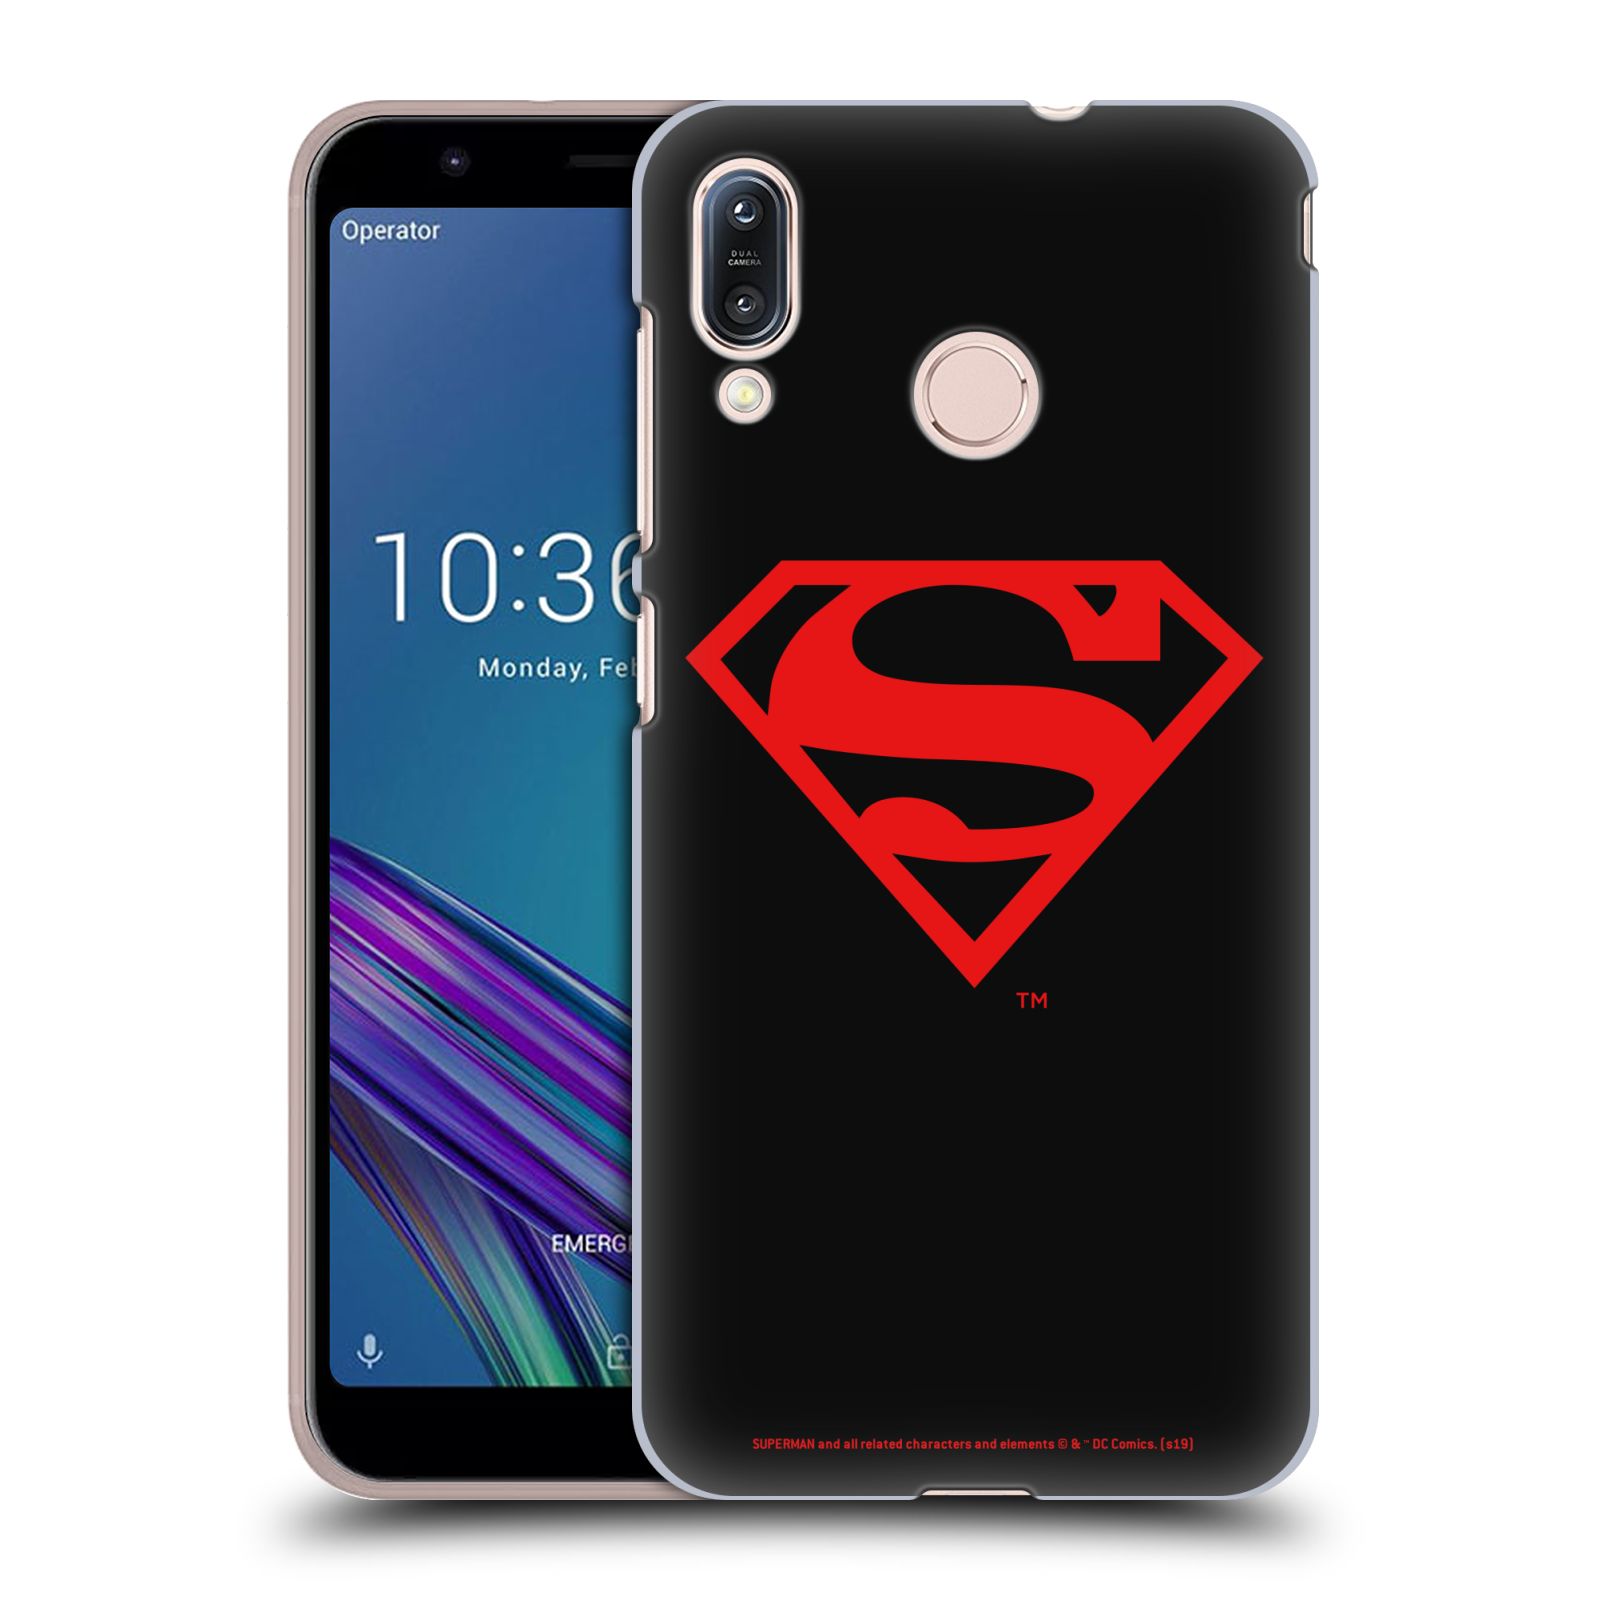 Pouzdro na mobil ASUS ZENFONE MAX M1 (ZB555KL) - HEAD CASE - DC komix Superman červený znak černé pozadí